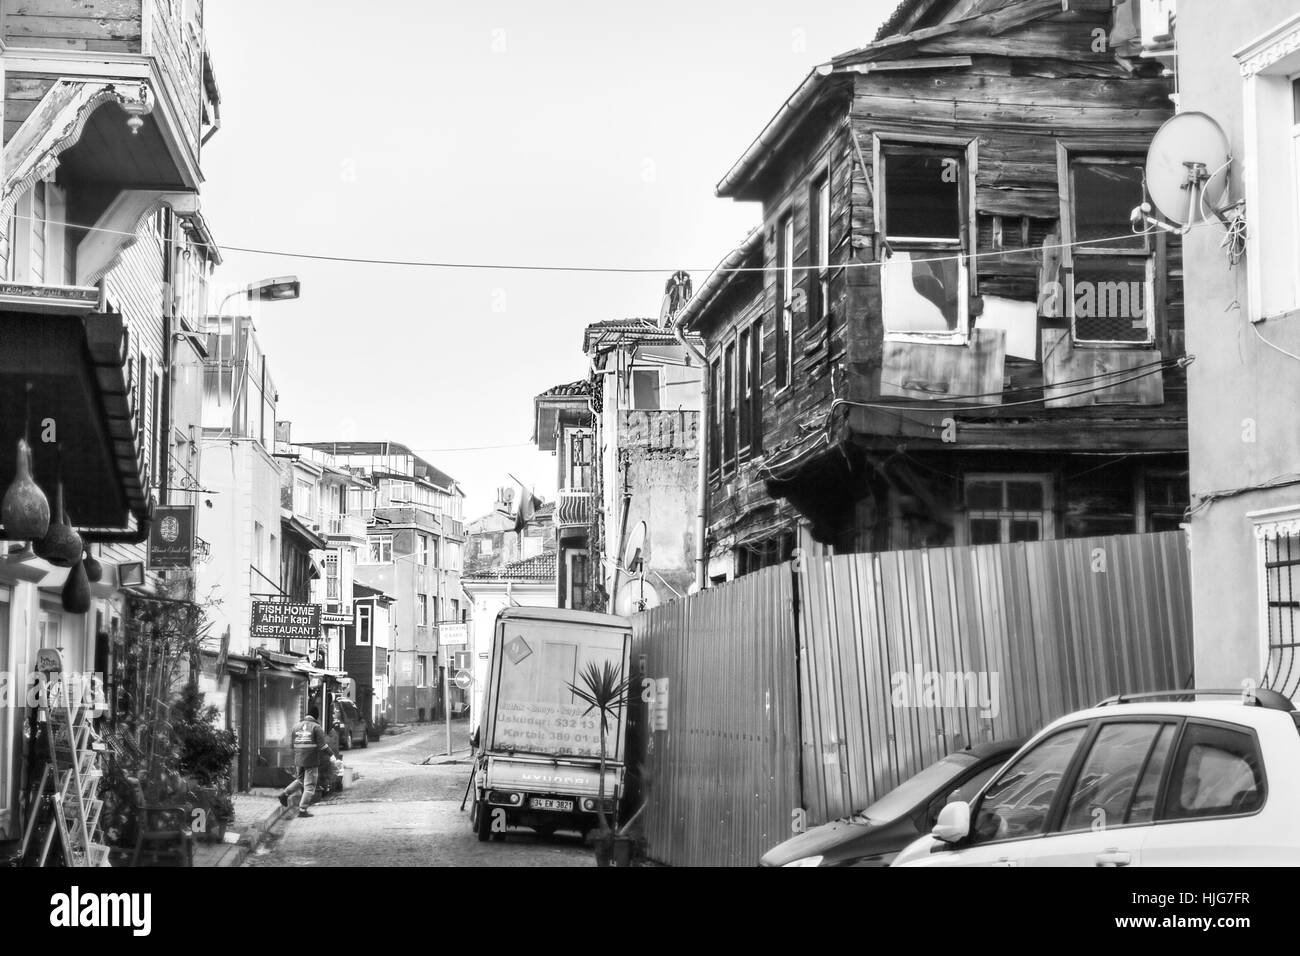 27. Dezember 2017 - Istanbul, Türkei: einer der alten historischen Viertel von Istanbul, Türkei, in schwarz und weiß Stockfoto